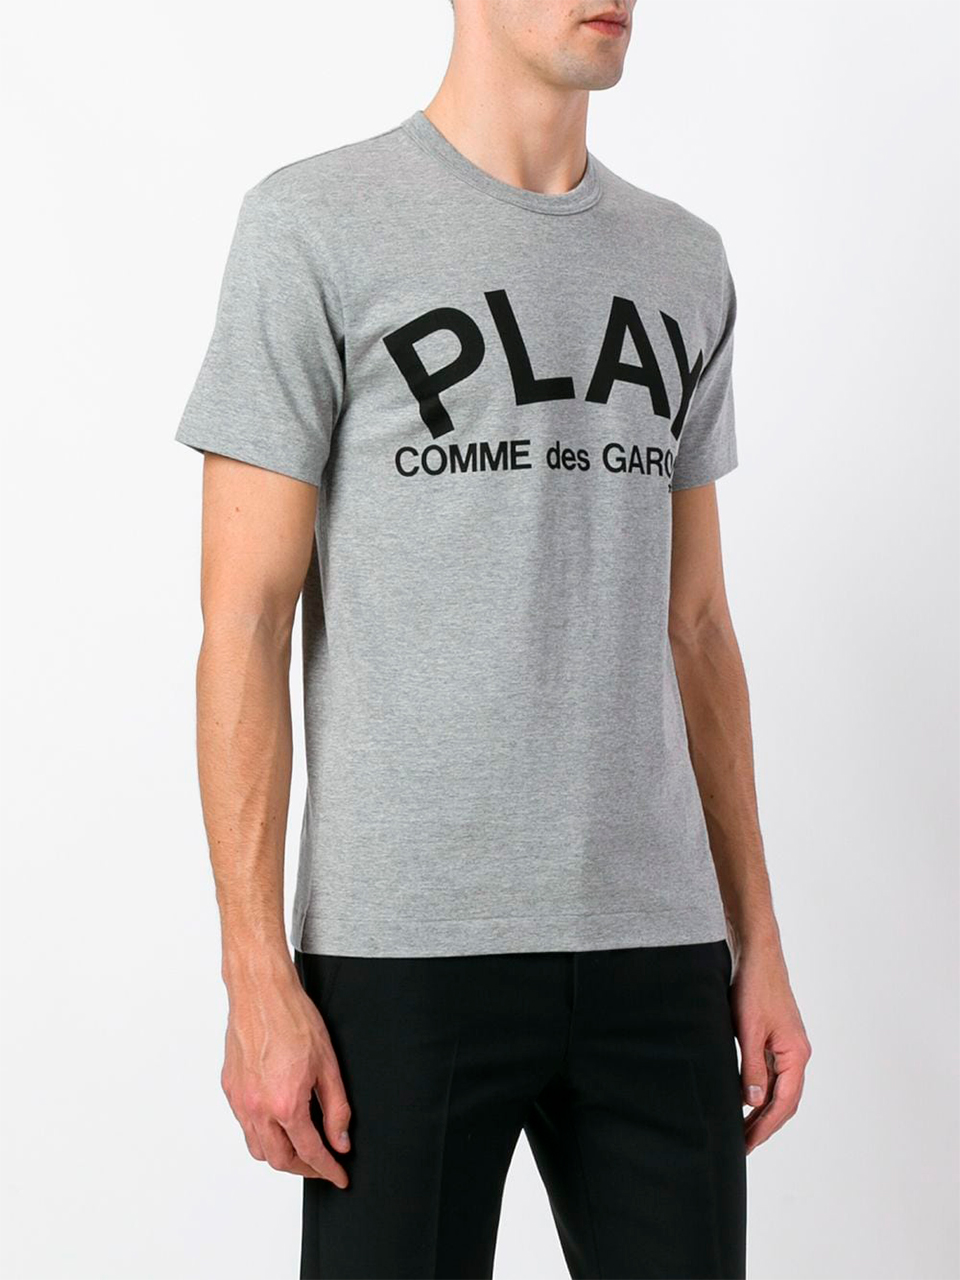 Imagem de: Camiseta Comme Des Garçons Play Cinza com Estampa